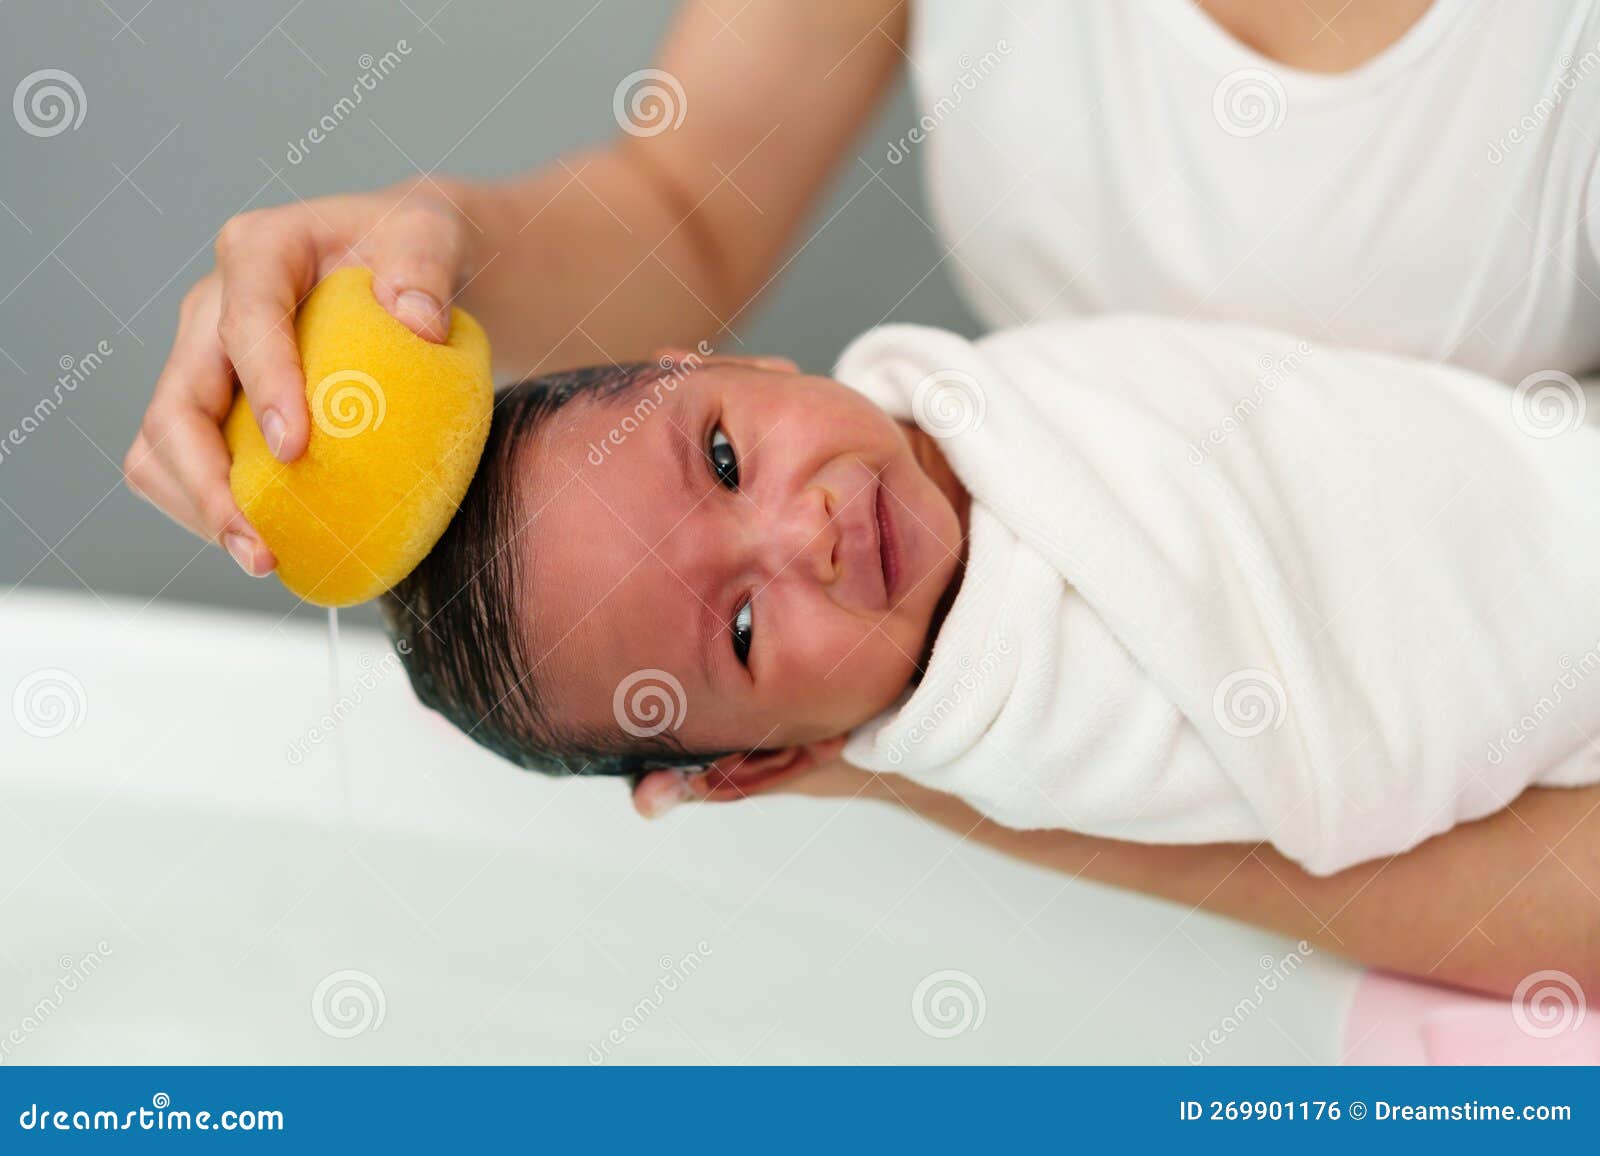 La Madre Está Lavando El Pelo Del Recién Nacido Con Esponja En La Bañera  Foto de archivo - Imagen de japonés, cara: 269901176